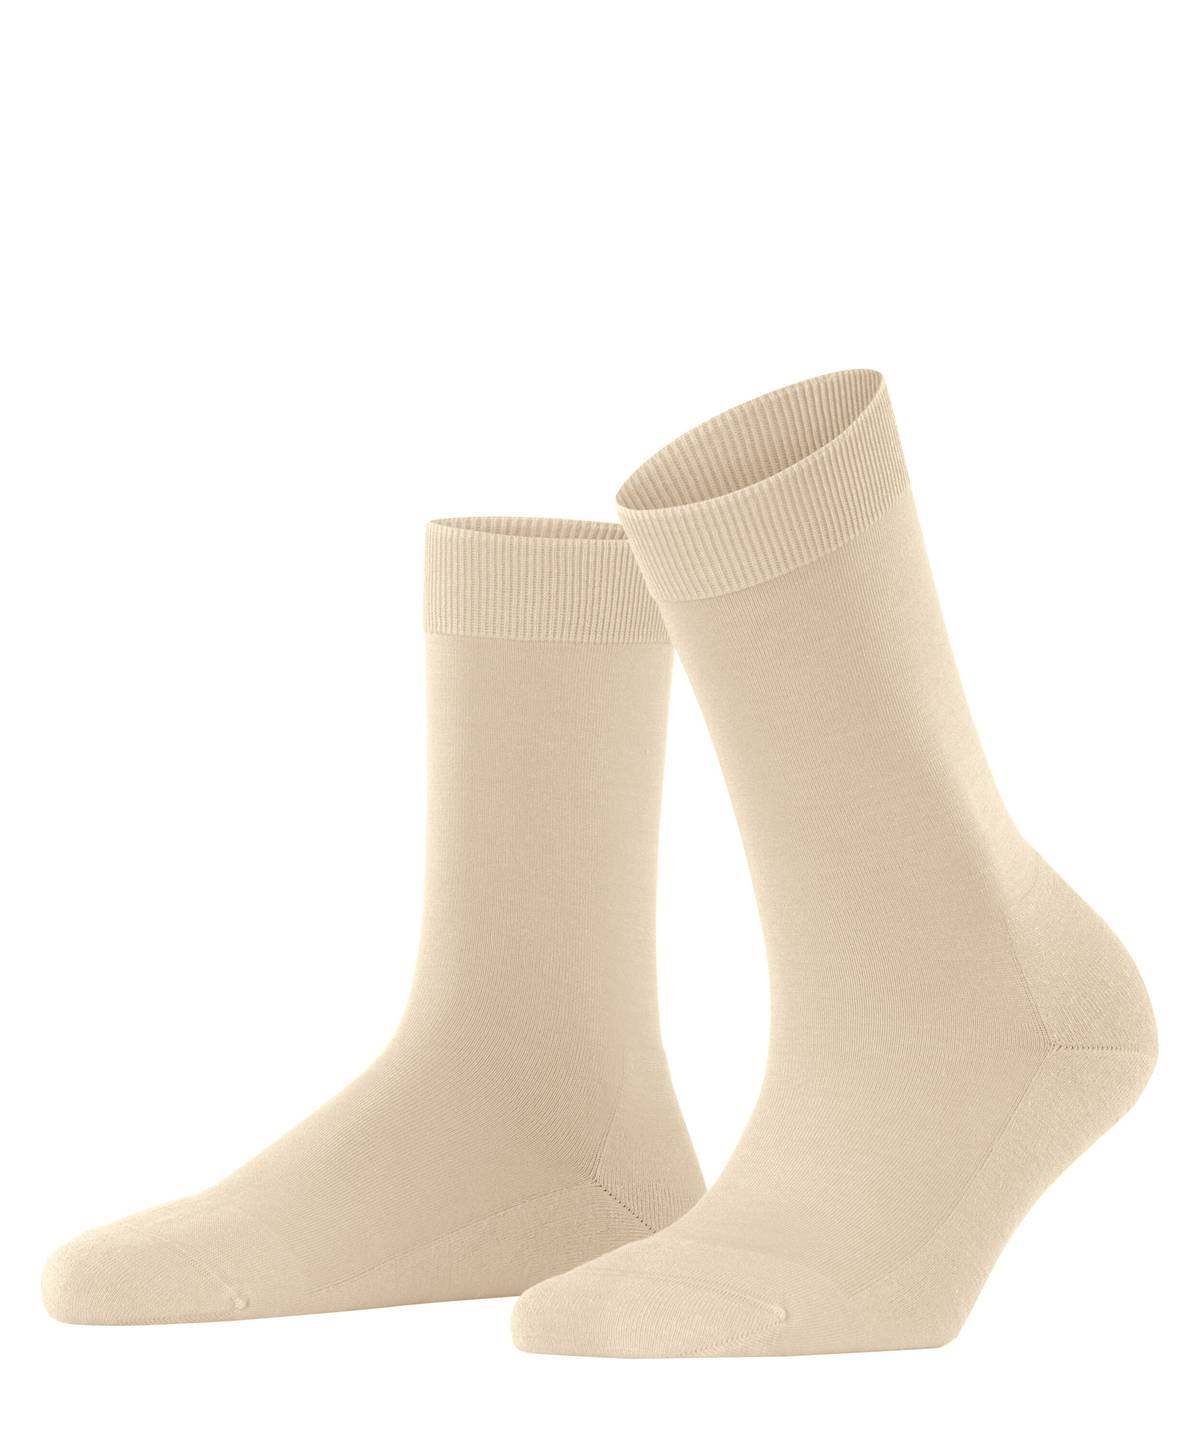 FALKE Kurzsocken Damen Socken - ClimaWool, Kurzsocken, einfarbig Creme | Kurzsocken